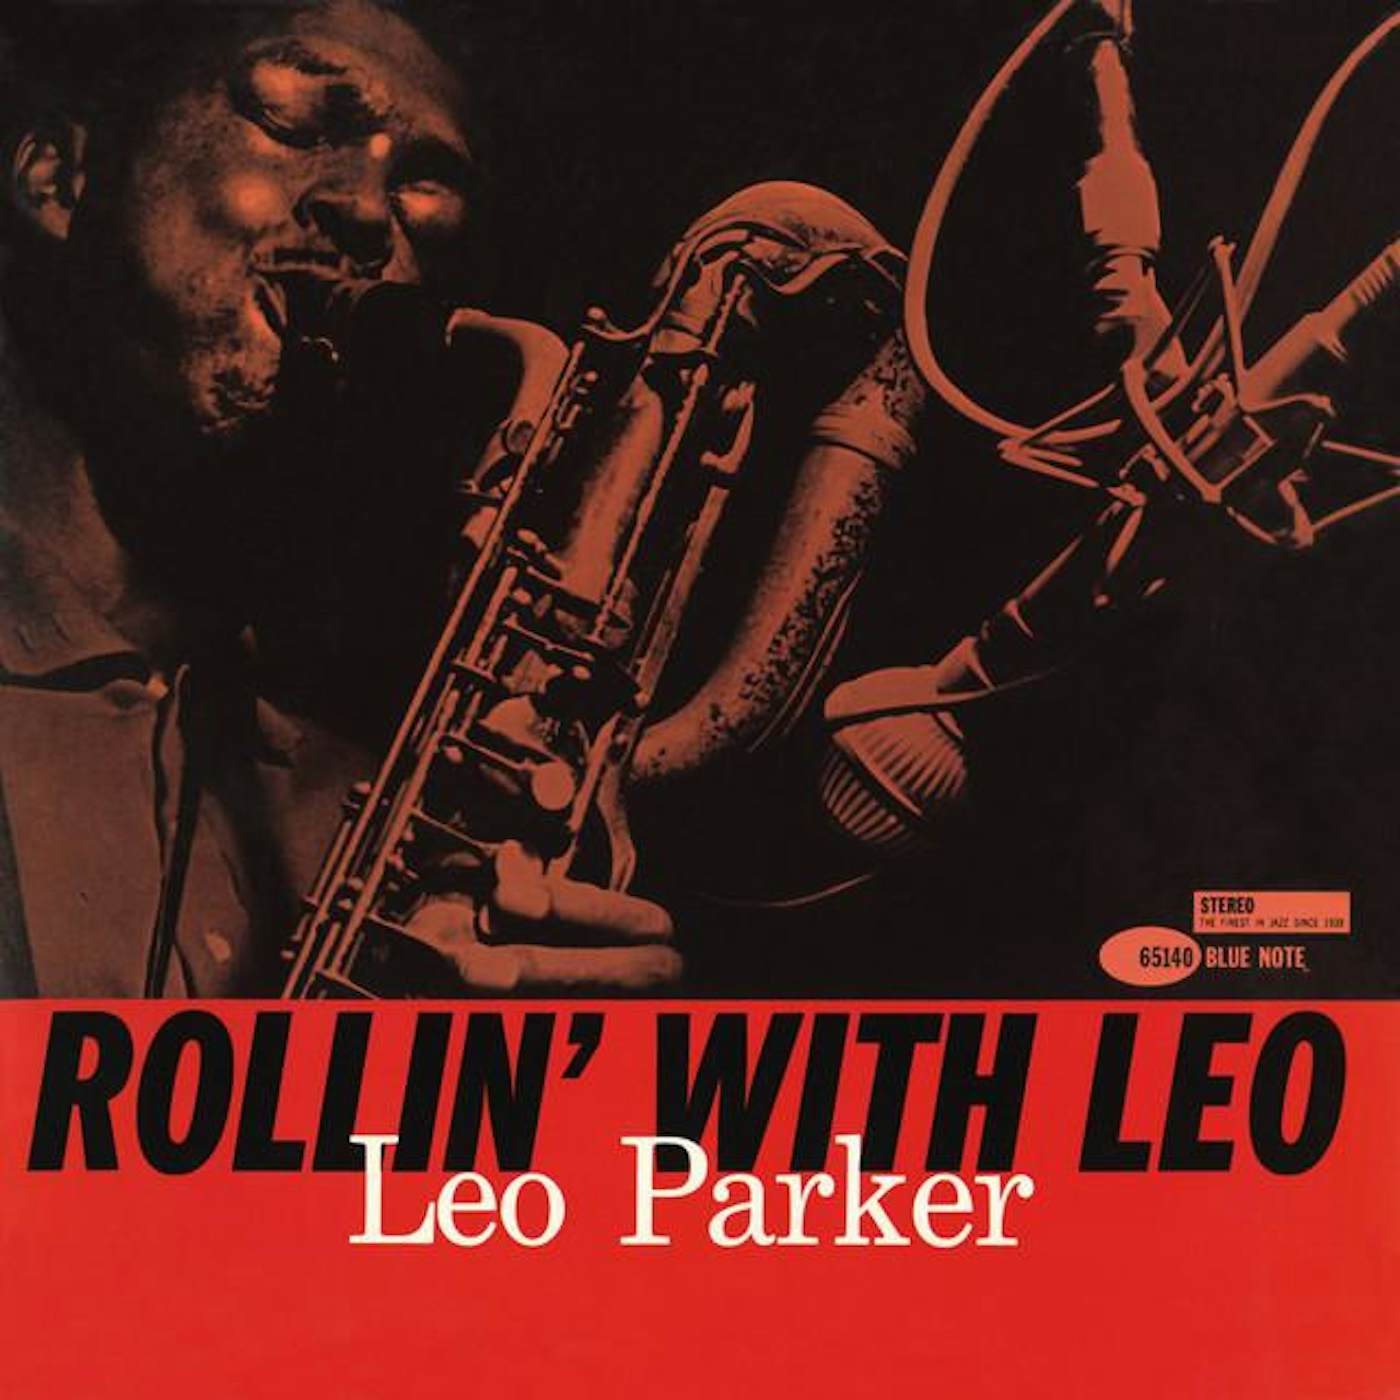 Leo Parker